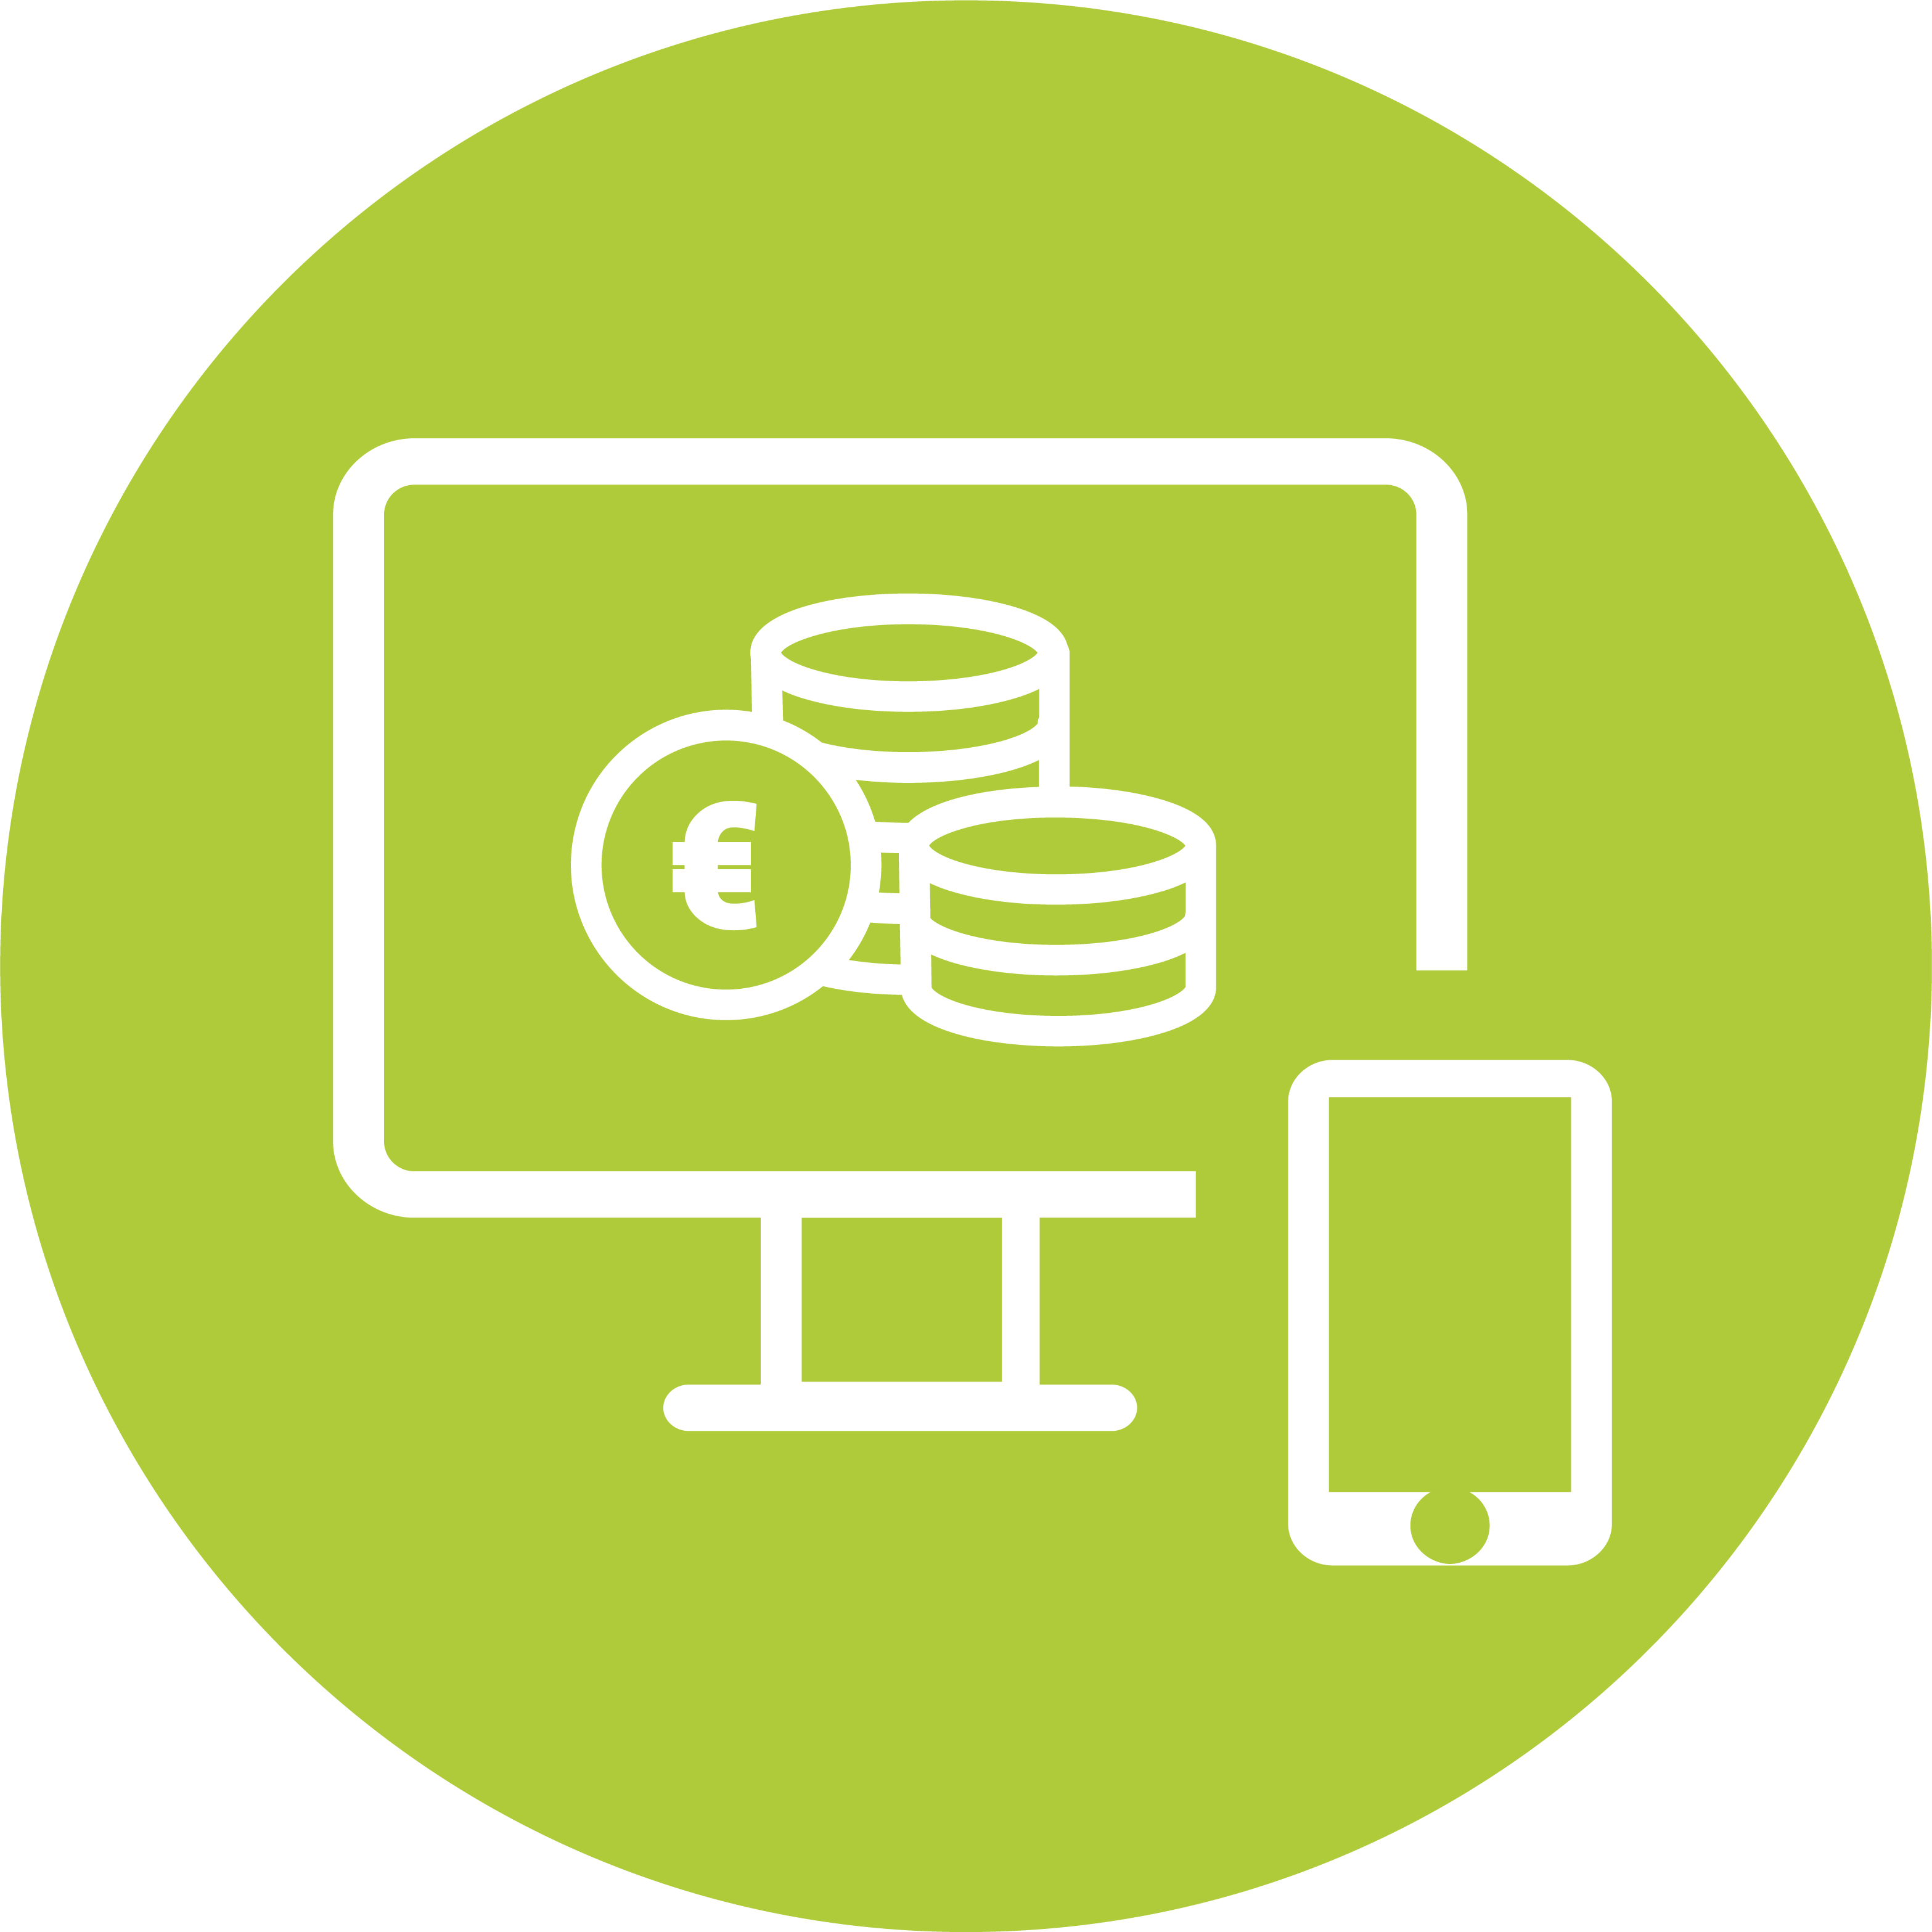 Icon mit einem Monitor, Münzstapeln und einem Smartphone auf einem grünen kreisförmigen Hintergrund, symbolisch für ein persönliches Hardwarebudget.